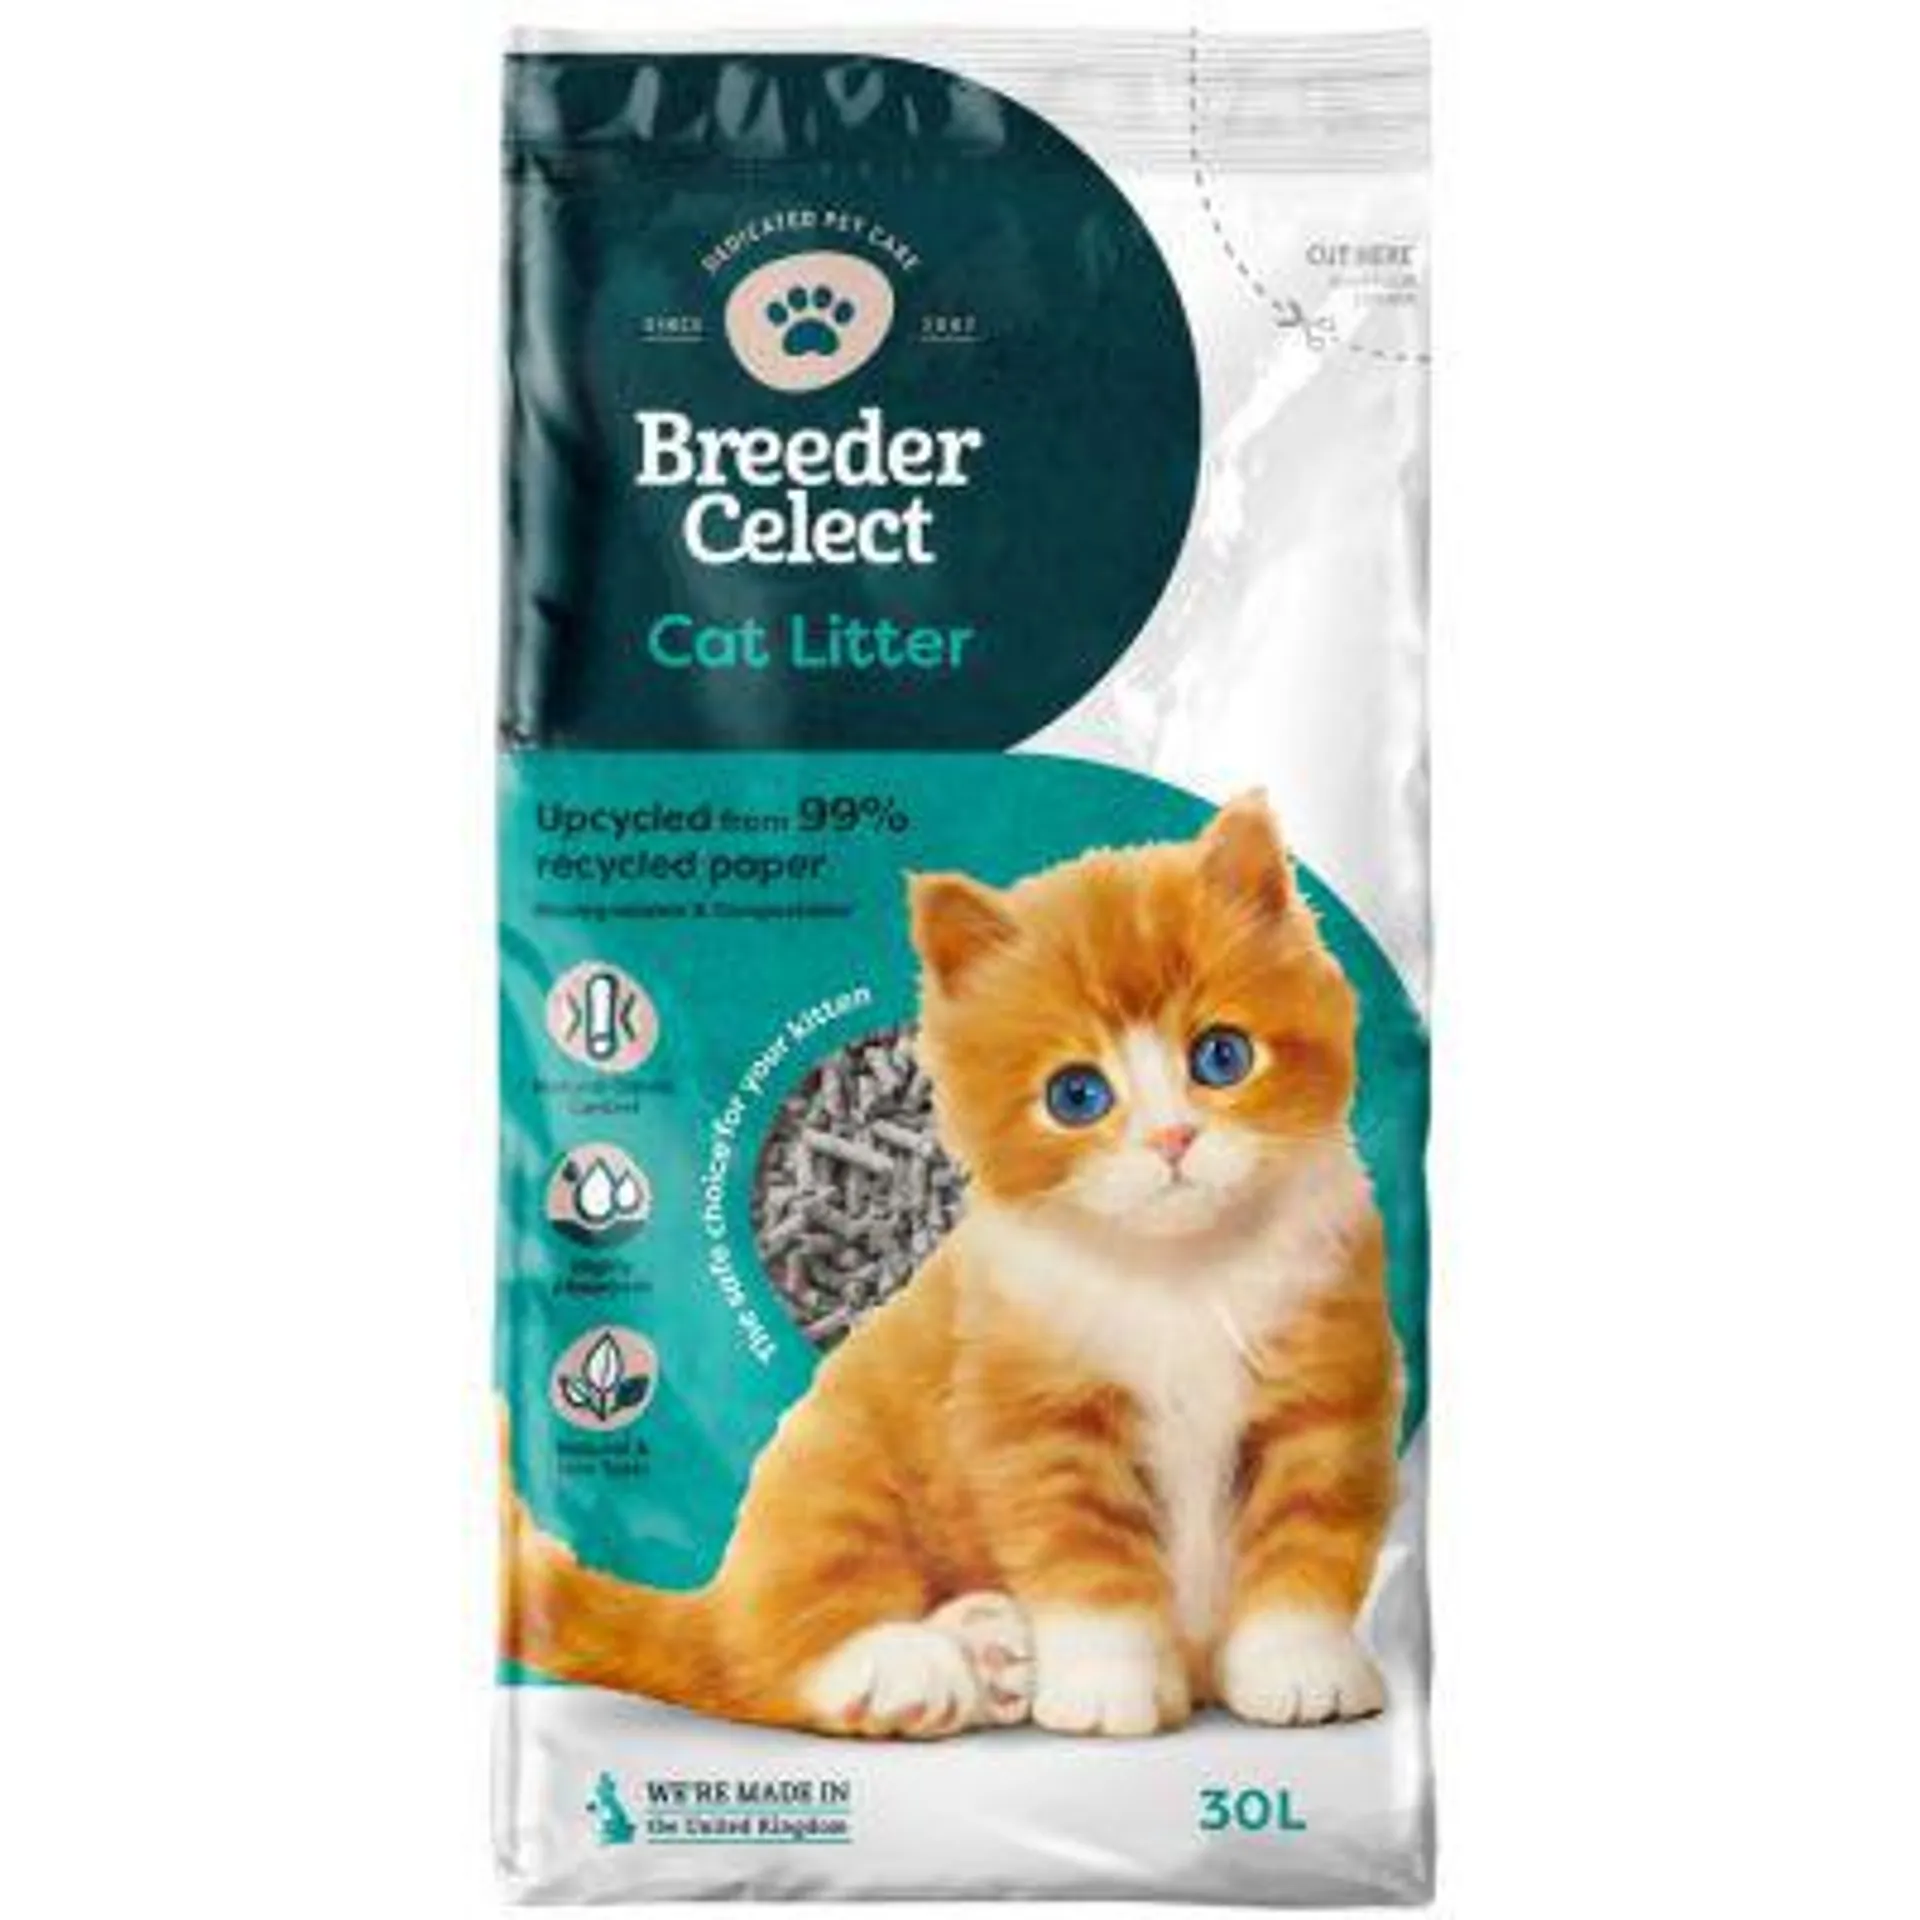 Breeder Celect Paper Cat Litter